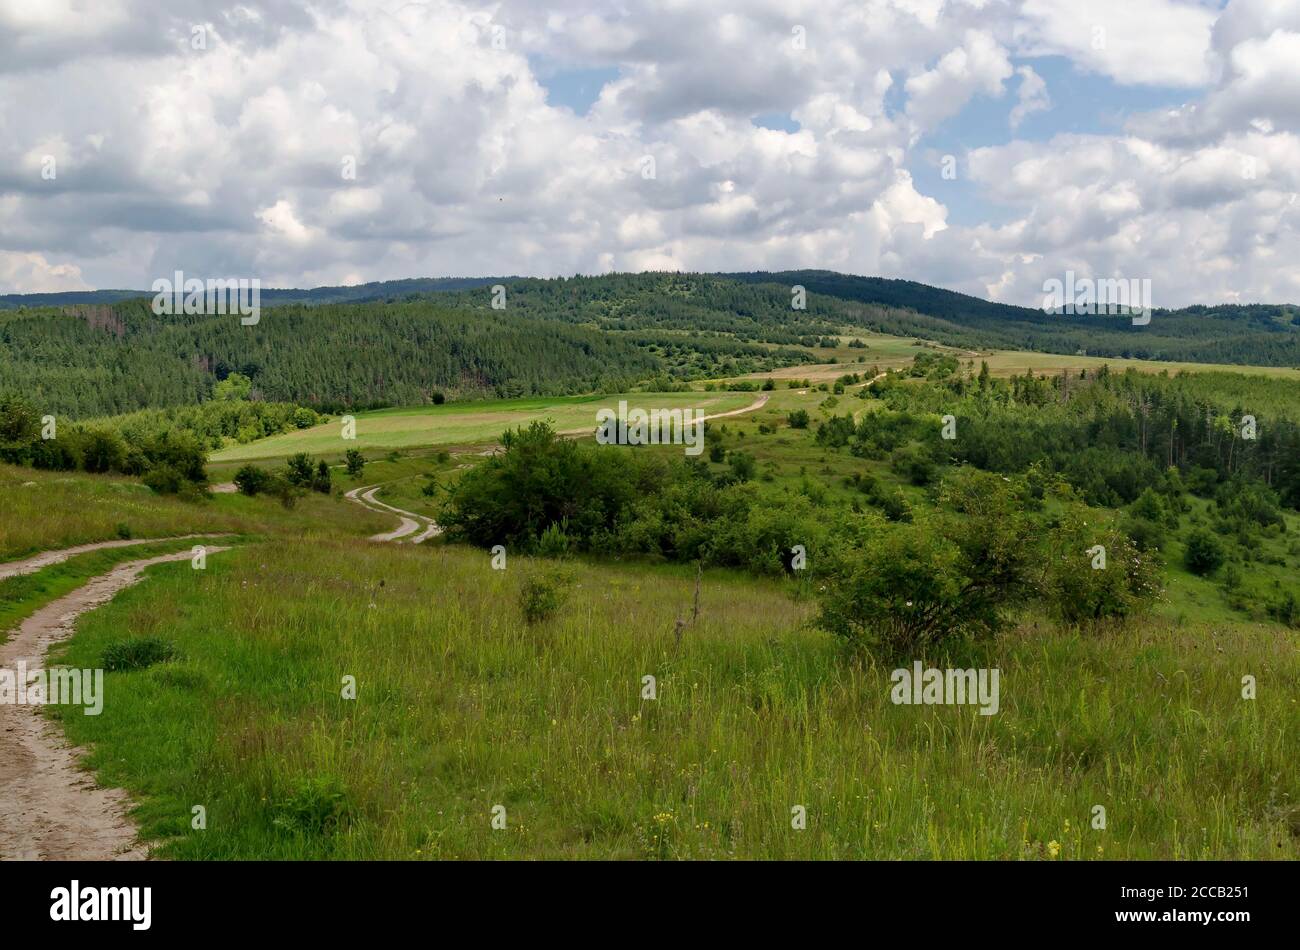 Forêt de conifères, prairies fraîches, diverses herbes aux fleurs sauvages et une route sinueuse dans la montagne Plana, Bulgarie Banque D'Images